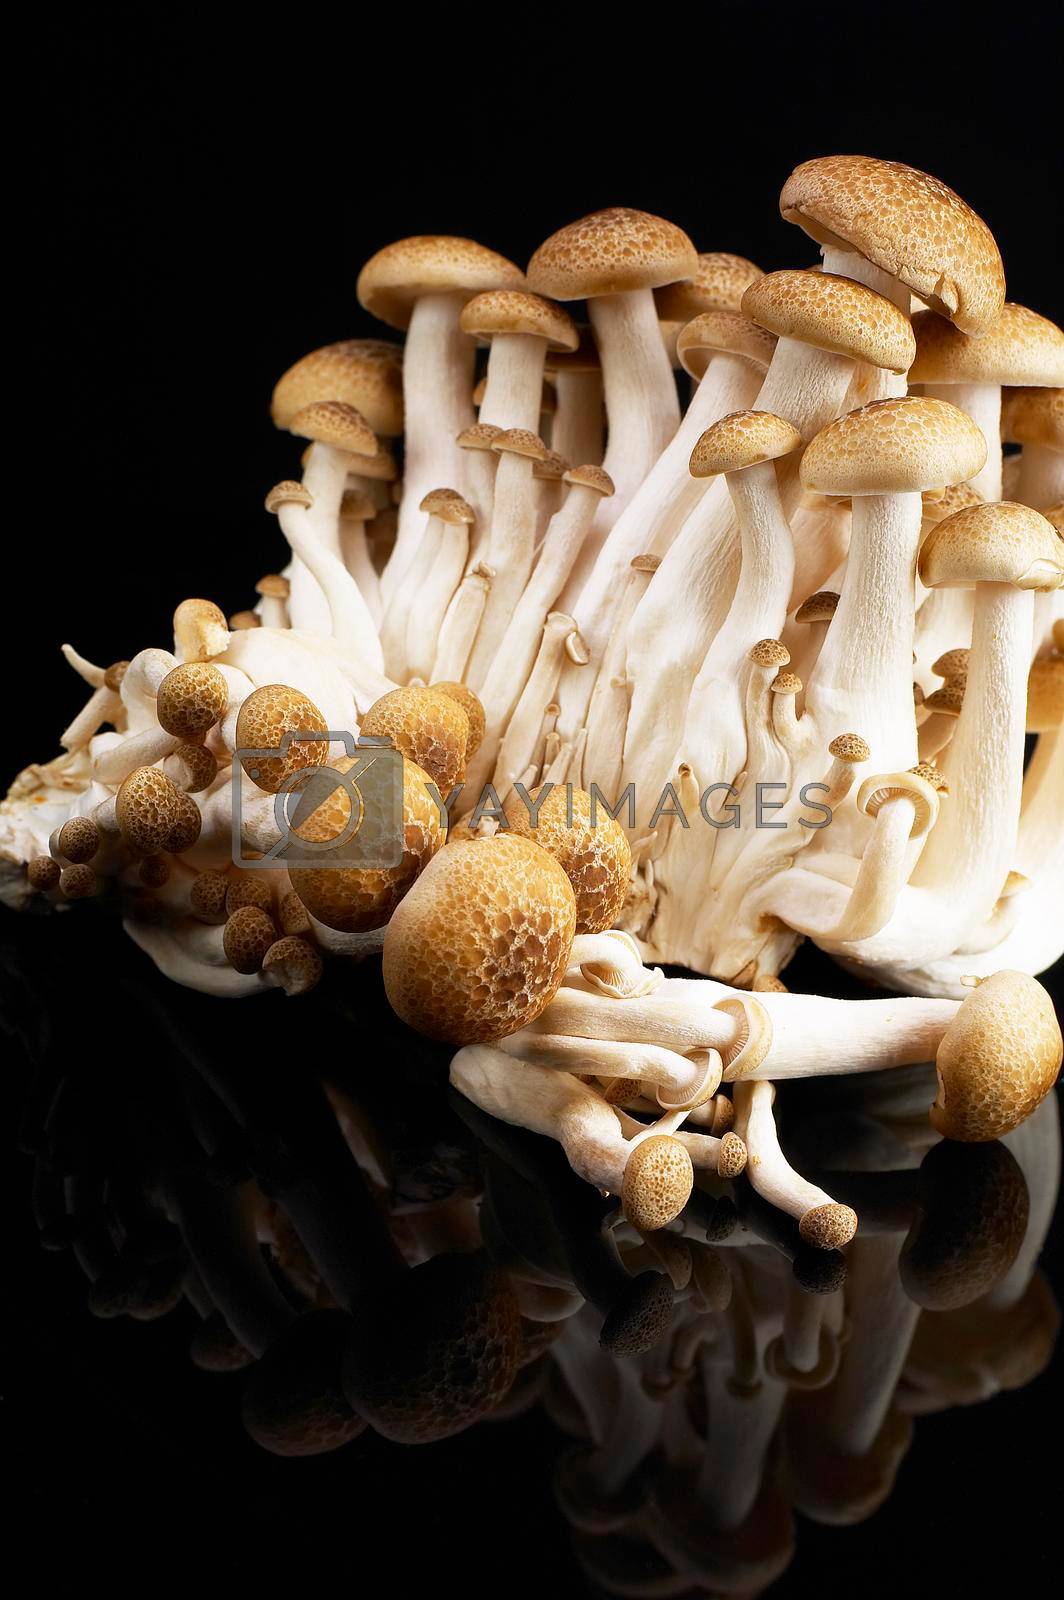 Royalty free image of mushrooms by keko64